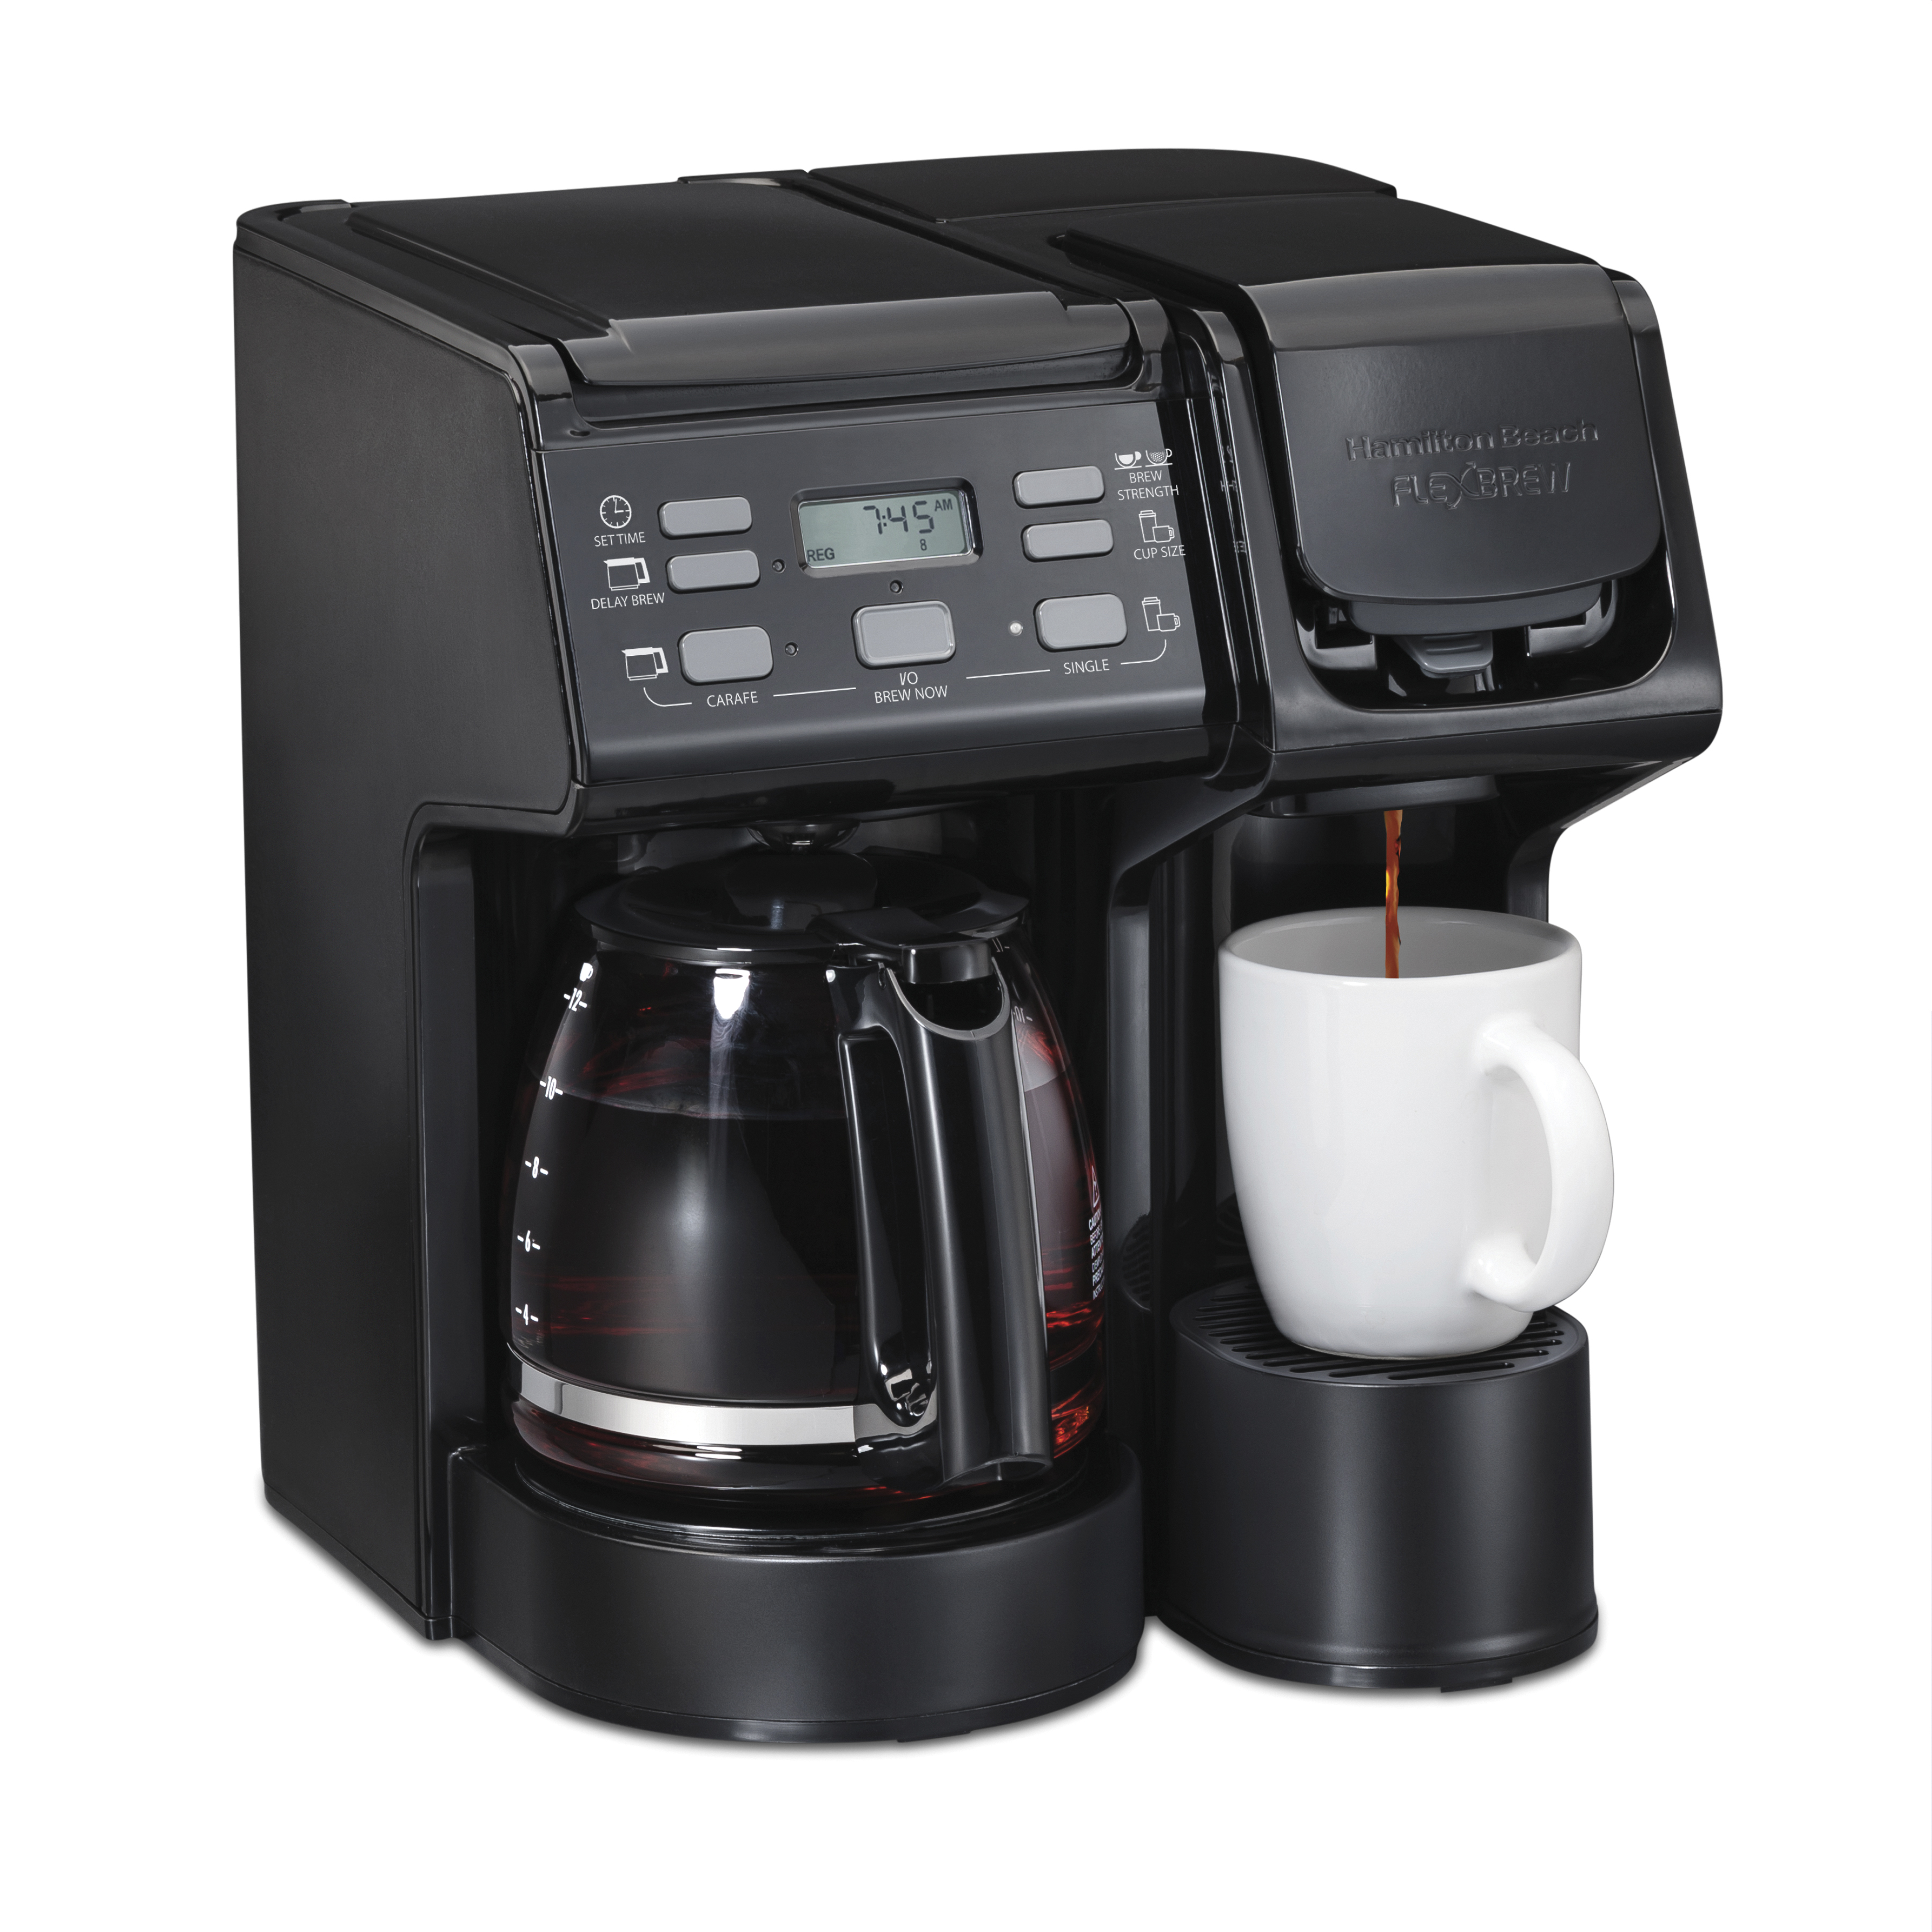 Hamilton Beach FlexBrew Trio Coffee Maker, Single Serve or 12 Cups, Black, 49904 - image 1 of 13